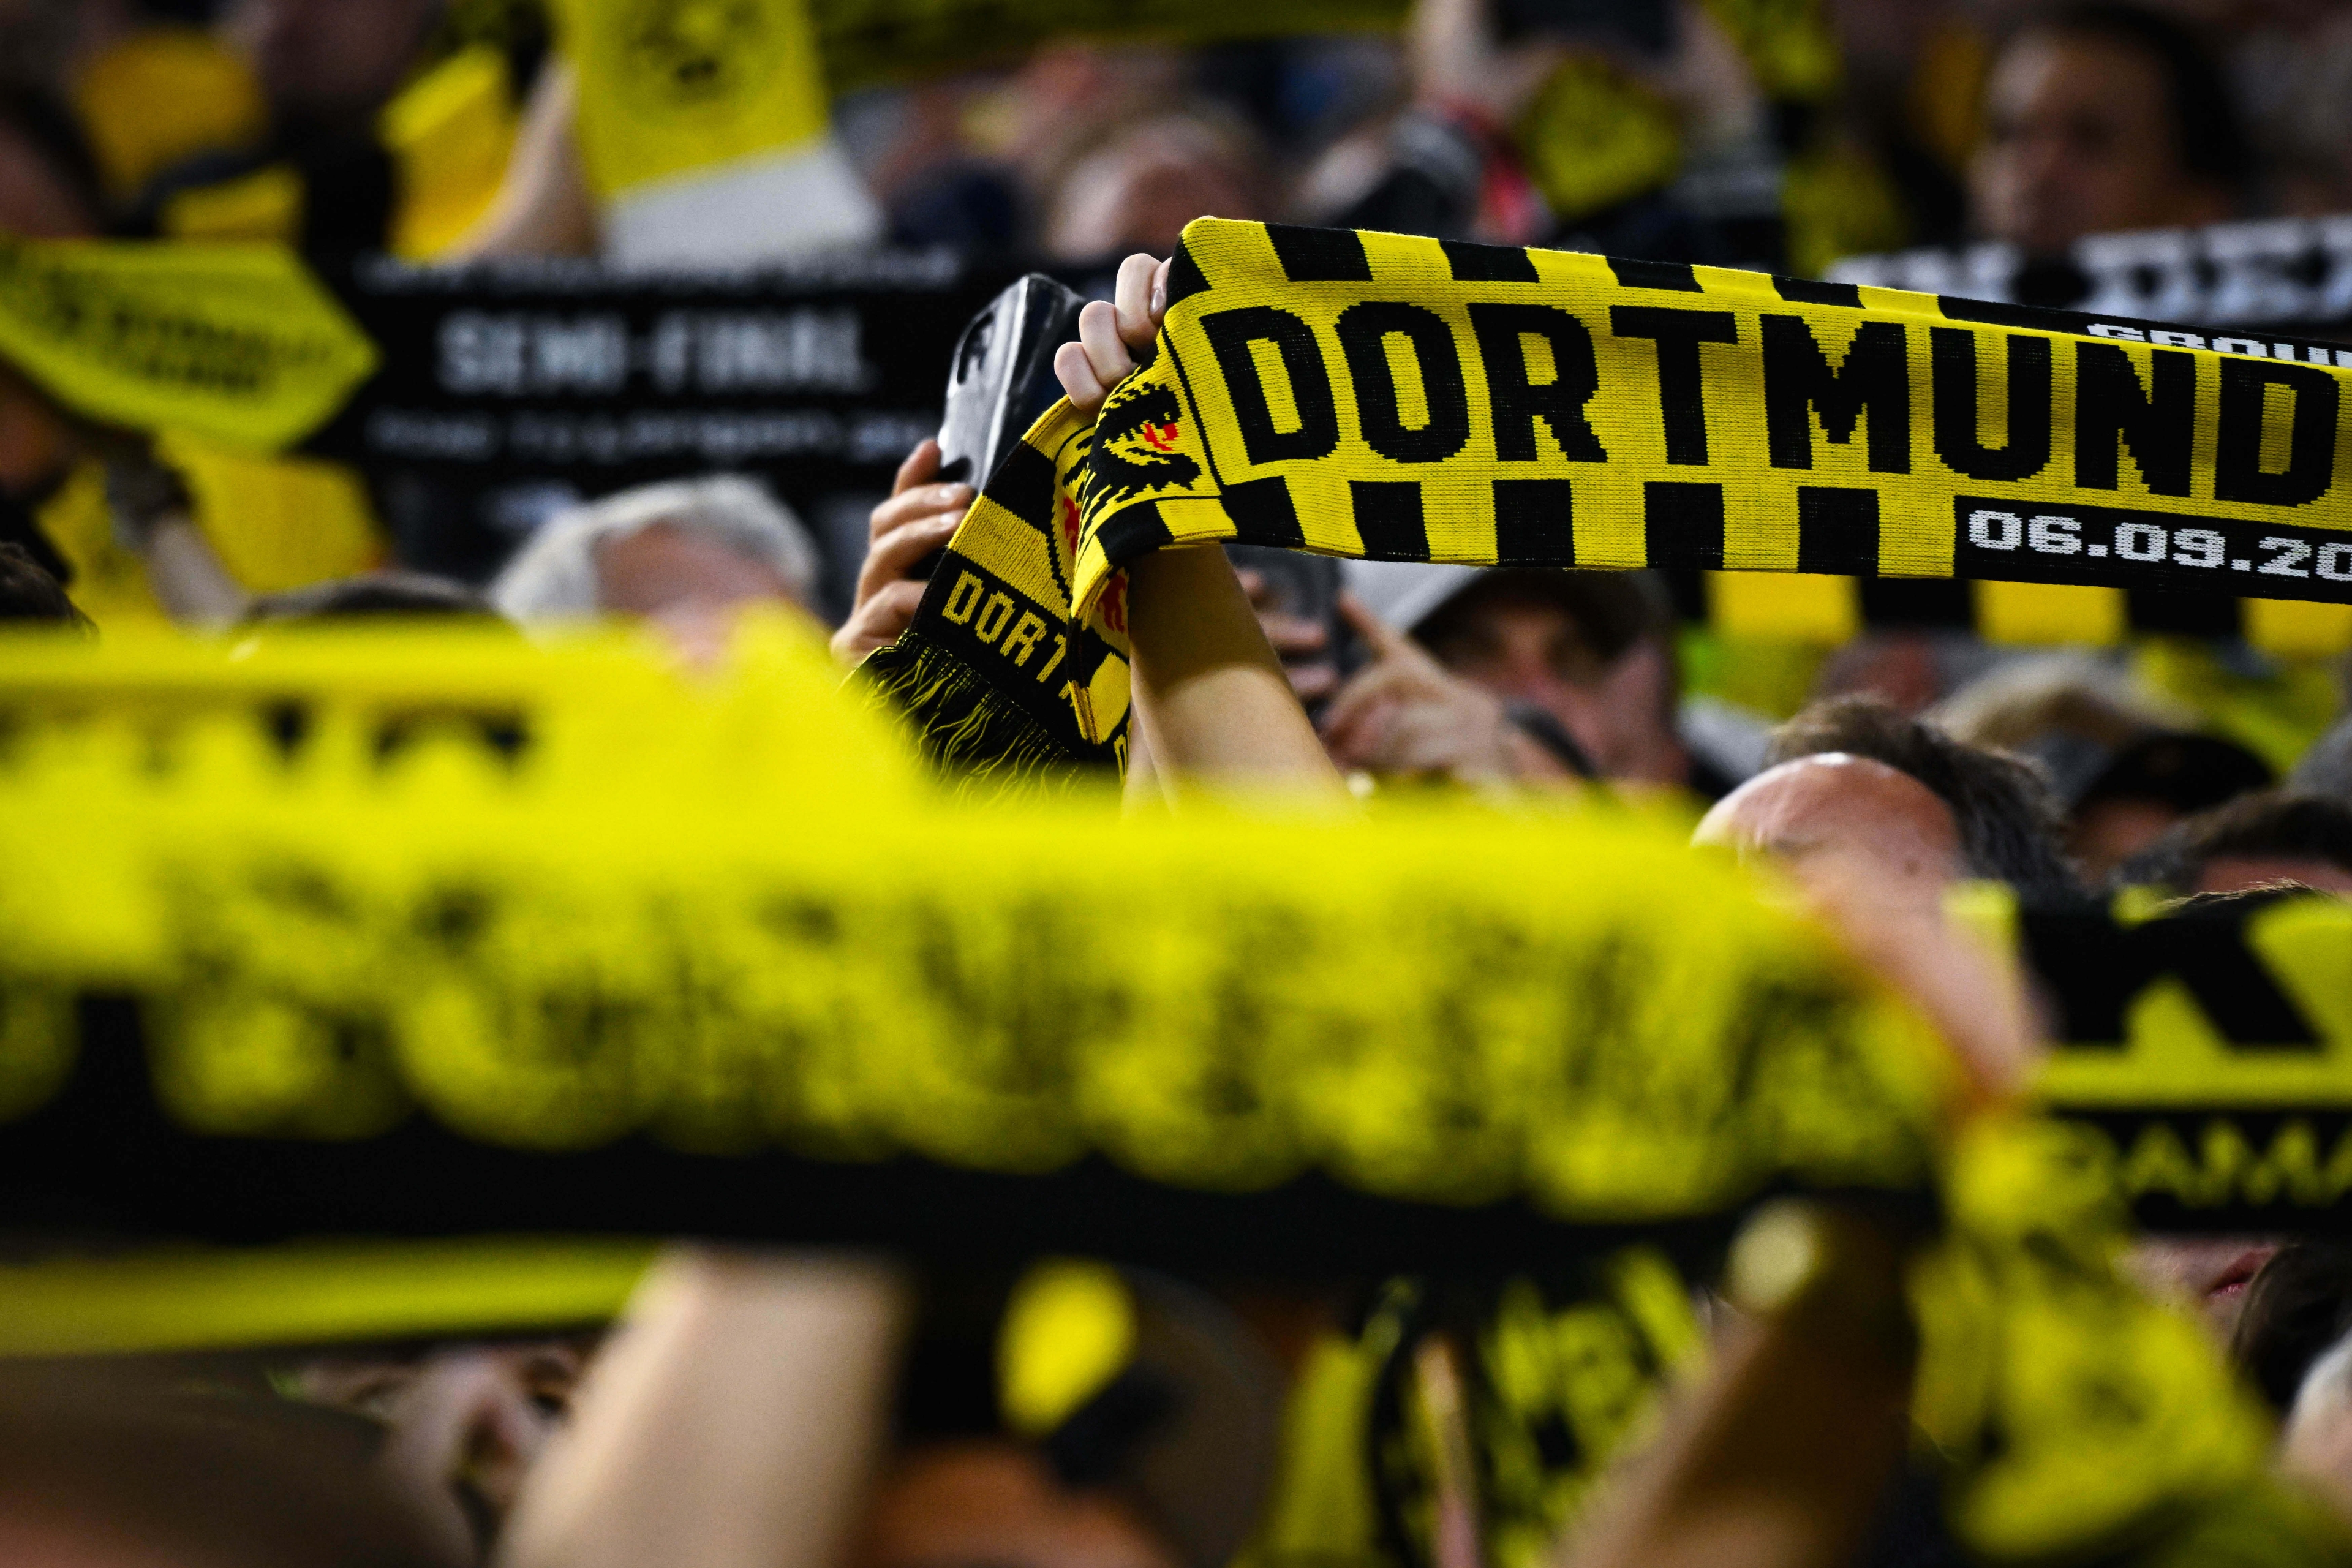 Dortmund assure 5 places en C1